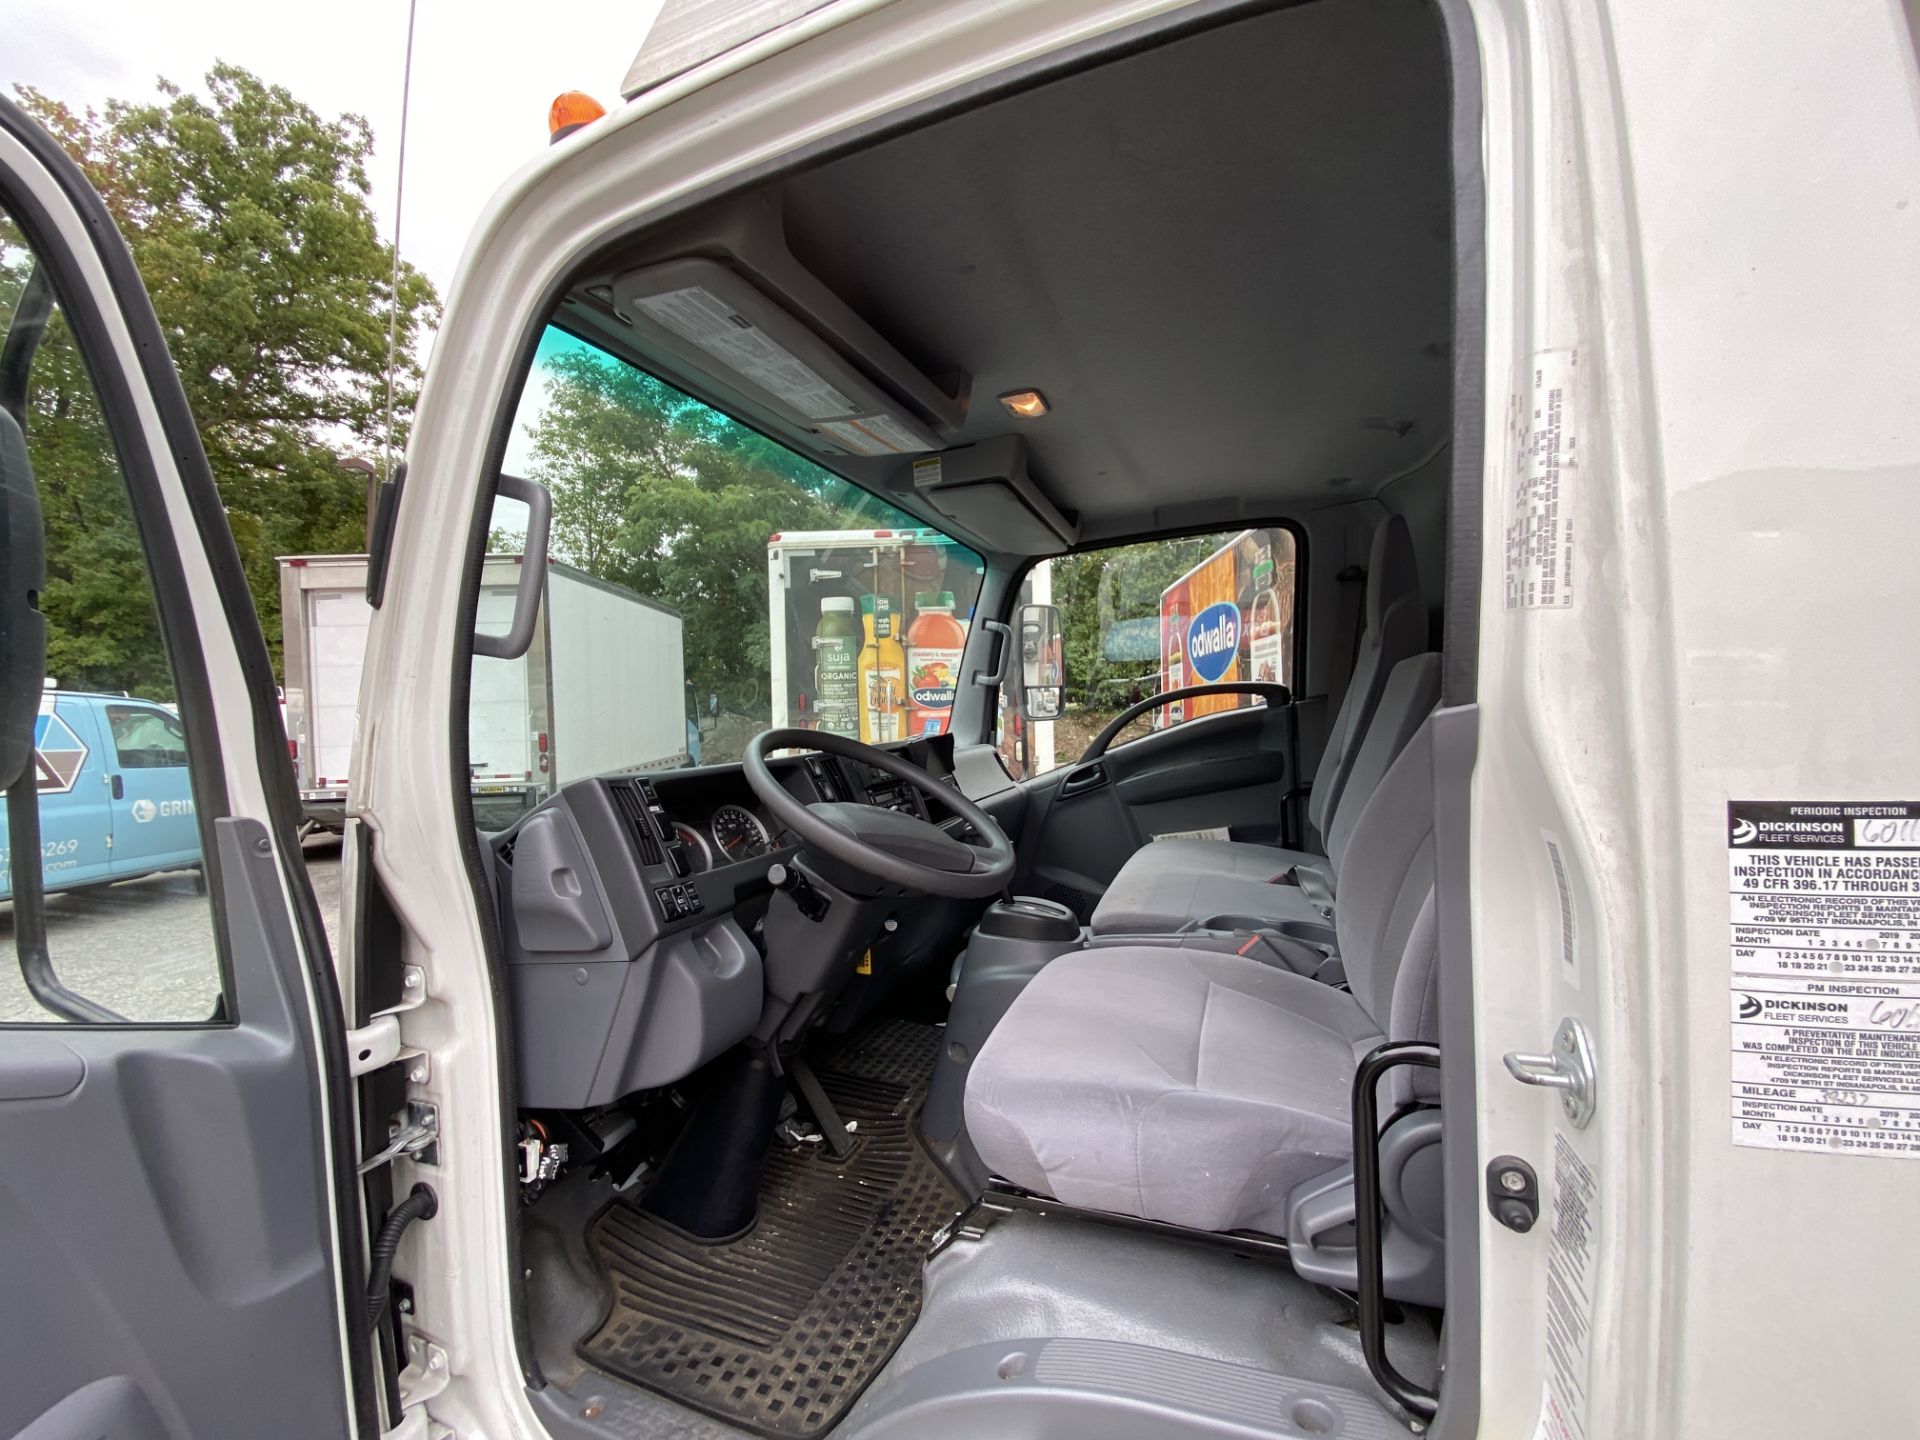 2019 Isuzu refrigerated truck - Image 7 of 9